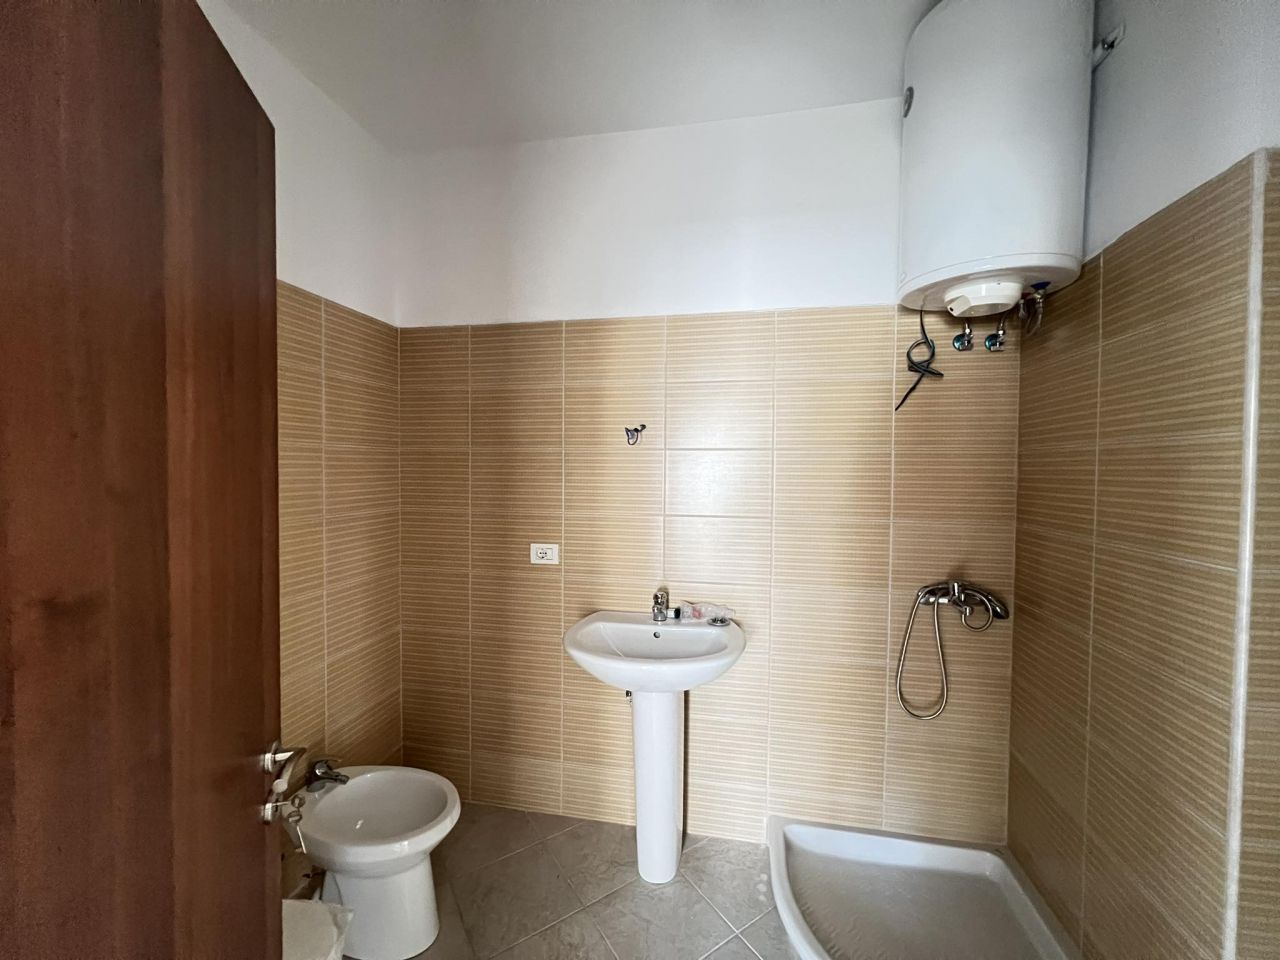 Eladó két hálószobás két fürdőszobás lakás Sarandában, Albániában, rövid távolságra a tengertől, jó minőségben